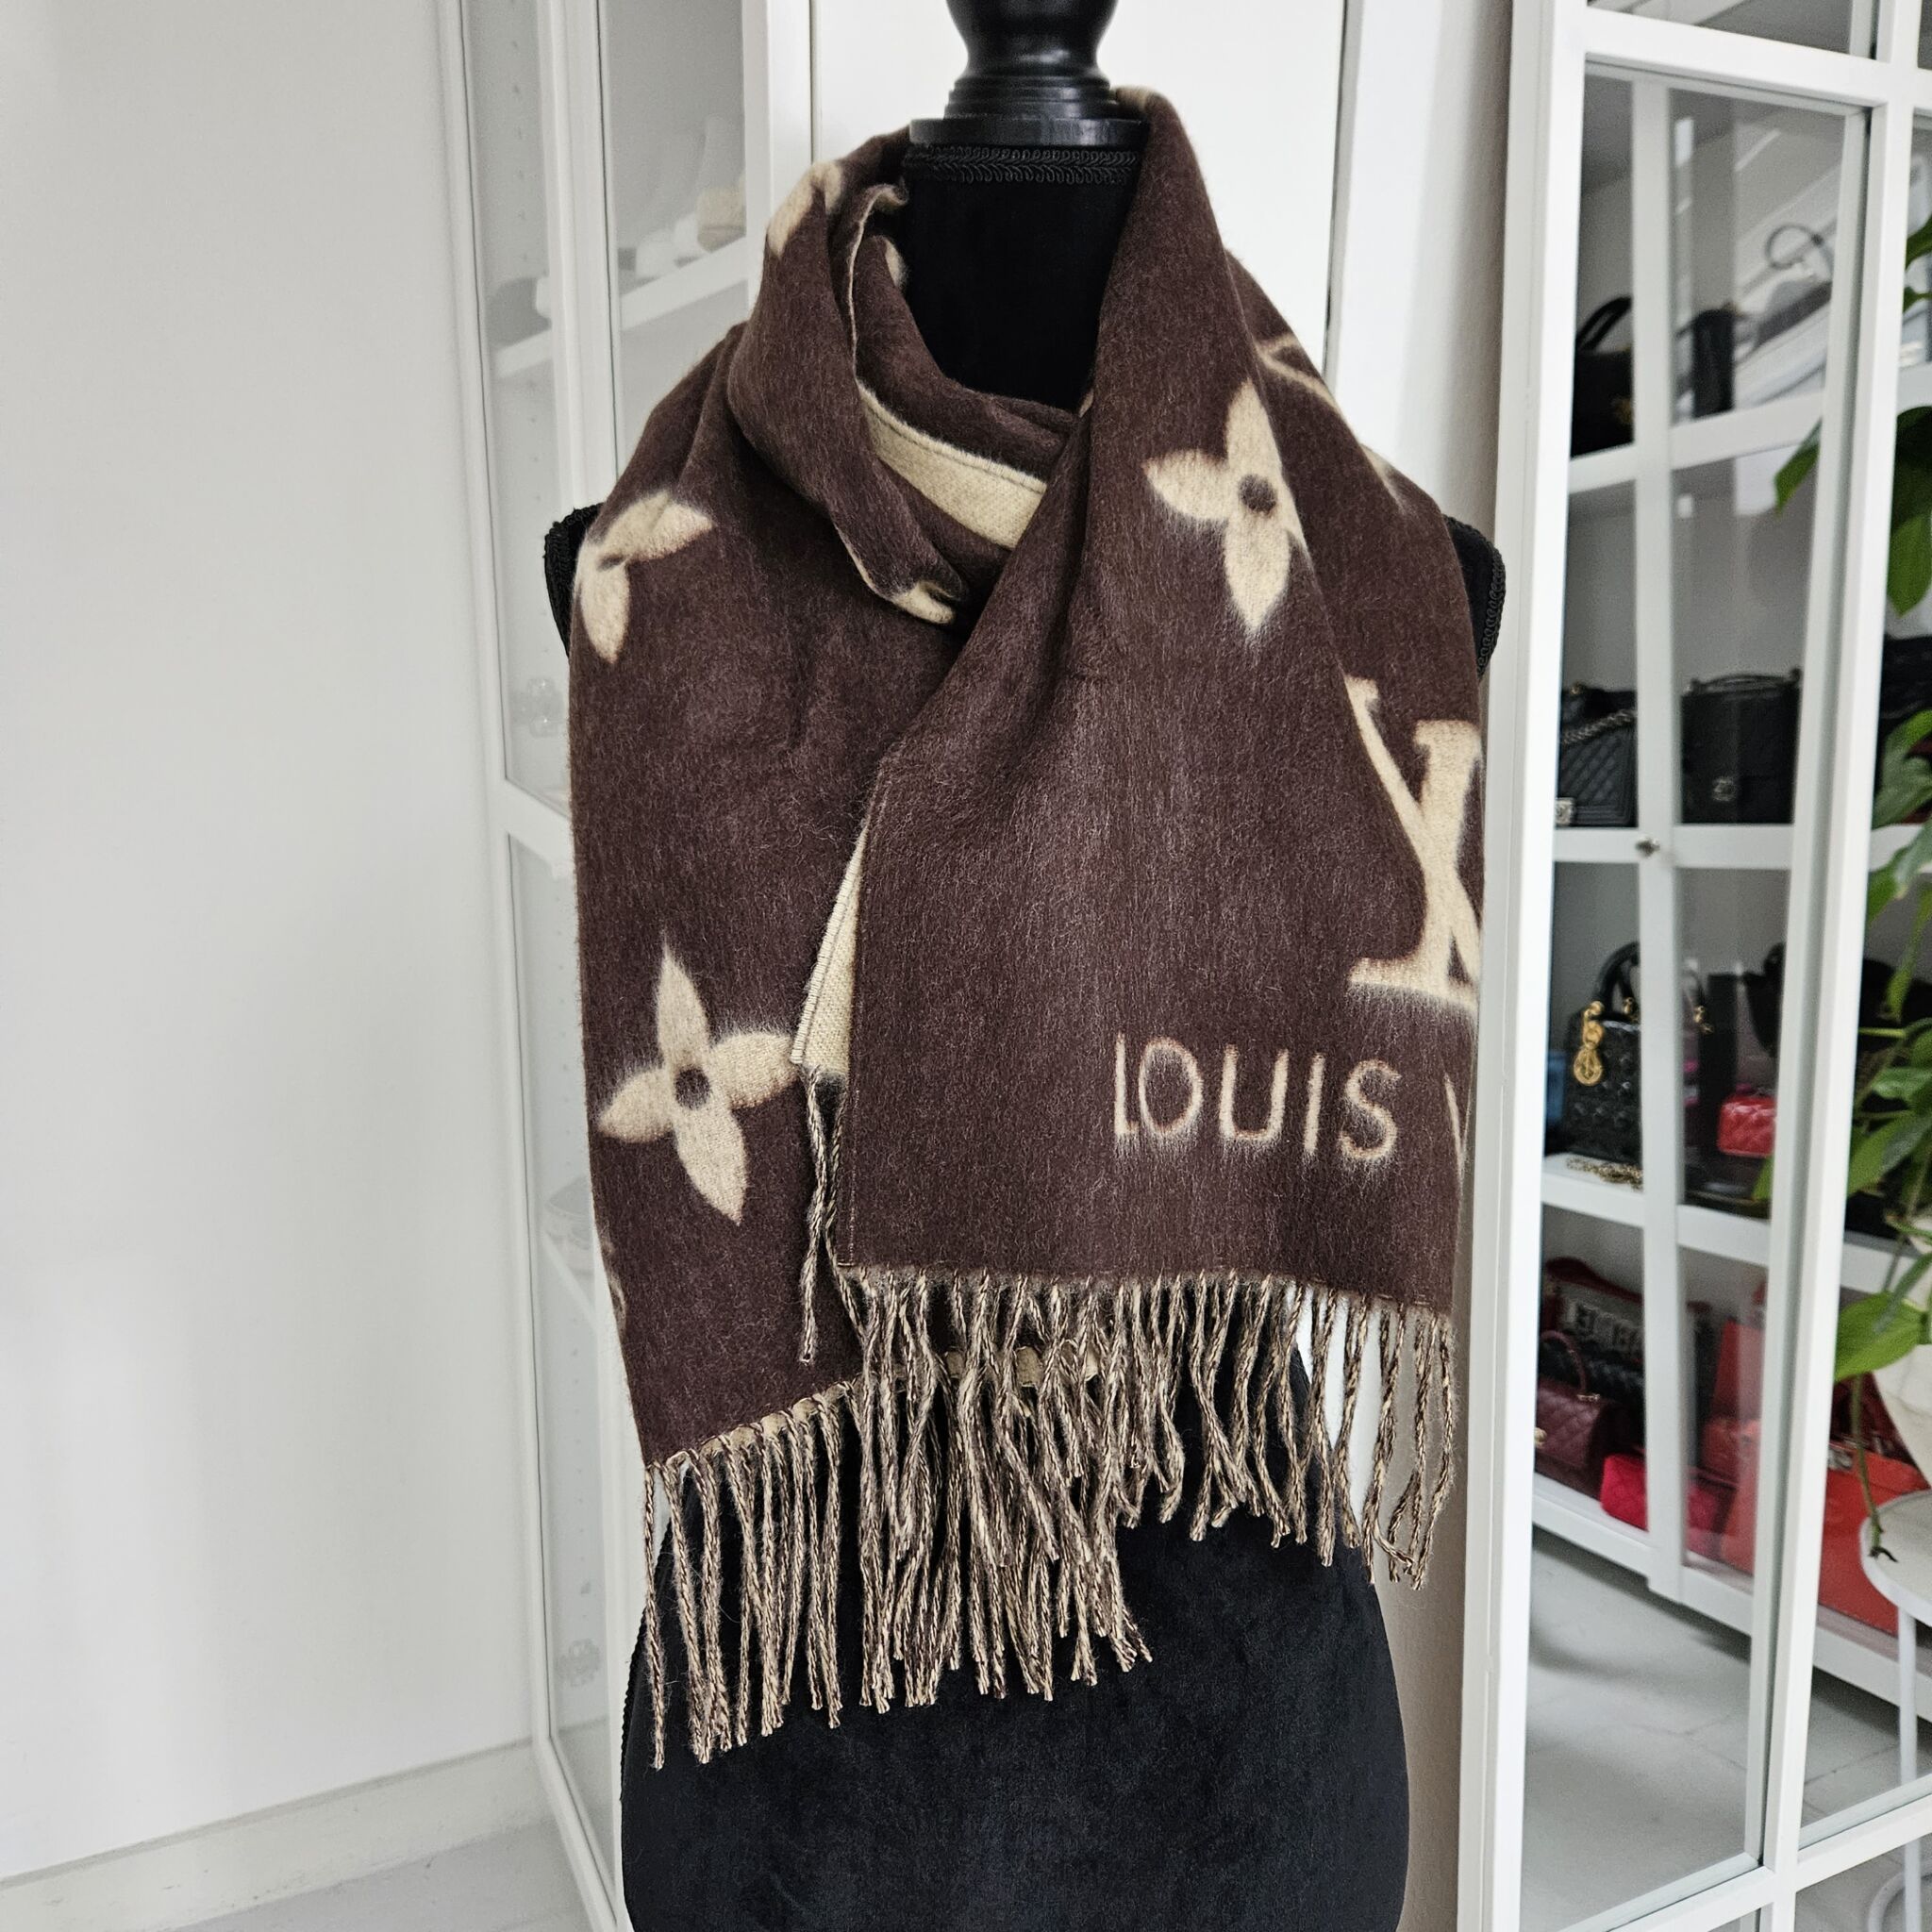 Louis Vuitton - Cold Reykjavik Scarf - Cashmere - Black - Women - Luxury